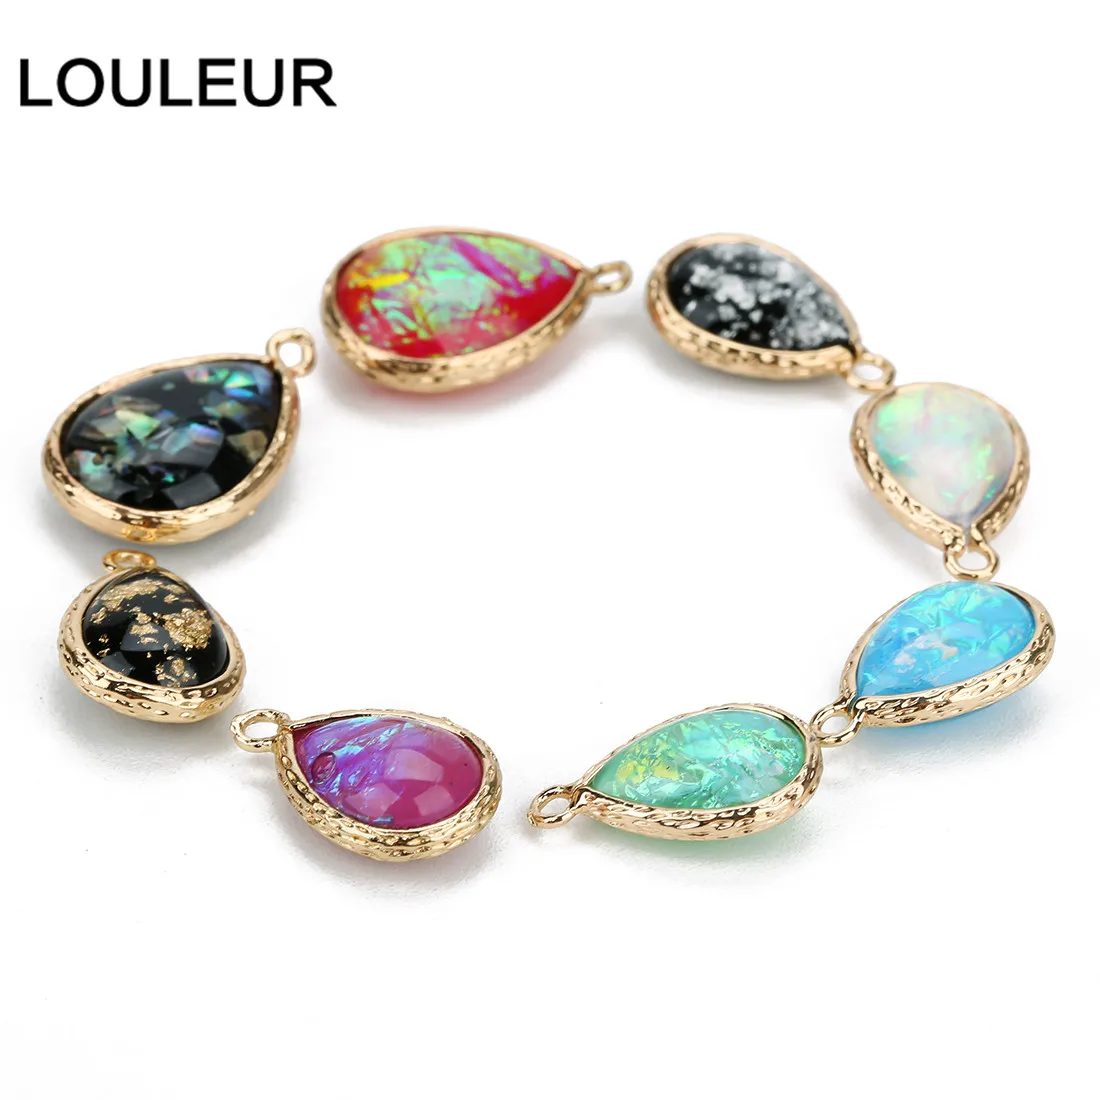 LOULEUR 8 цветов натуральный камень подвеска в виде капли воды блеск смолы кристалл для Diy Шарм ожерелья для женщин изготовление, поиск ювелирных изделий